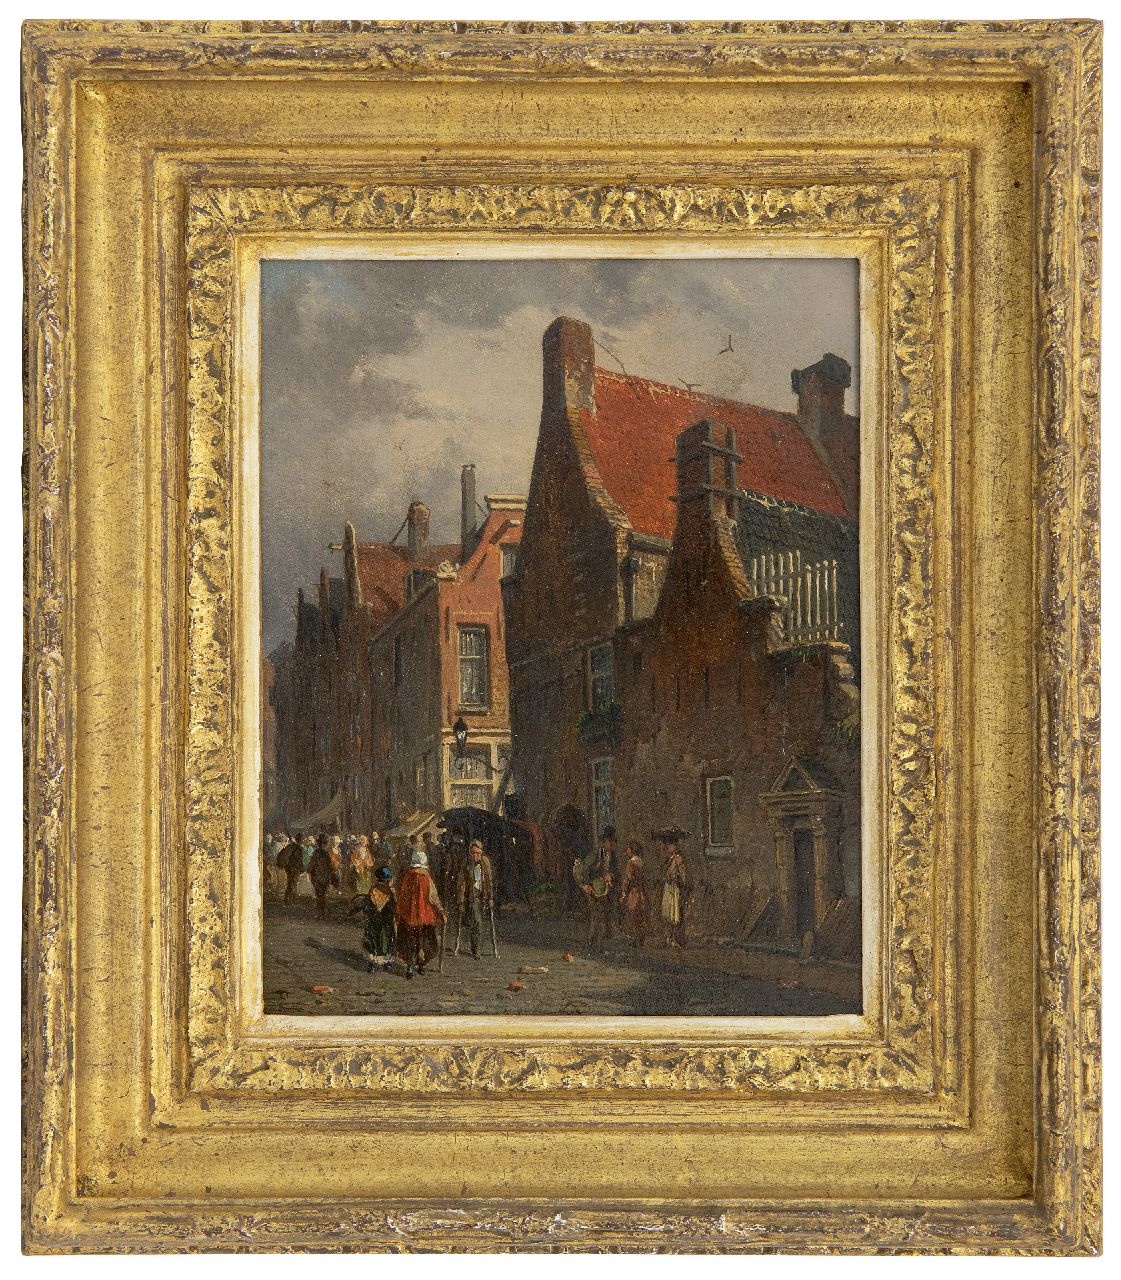 Eversen A.  | Adrianus Eversen | Schilderijen te koop aangeboden | Hollands stadsgezicht, olieverf op paneel 19,5 x 15,5 cm, gesigneerd linksonder met monogram en verso op etiket voluit